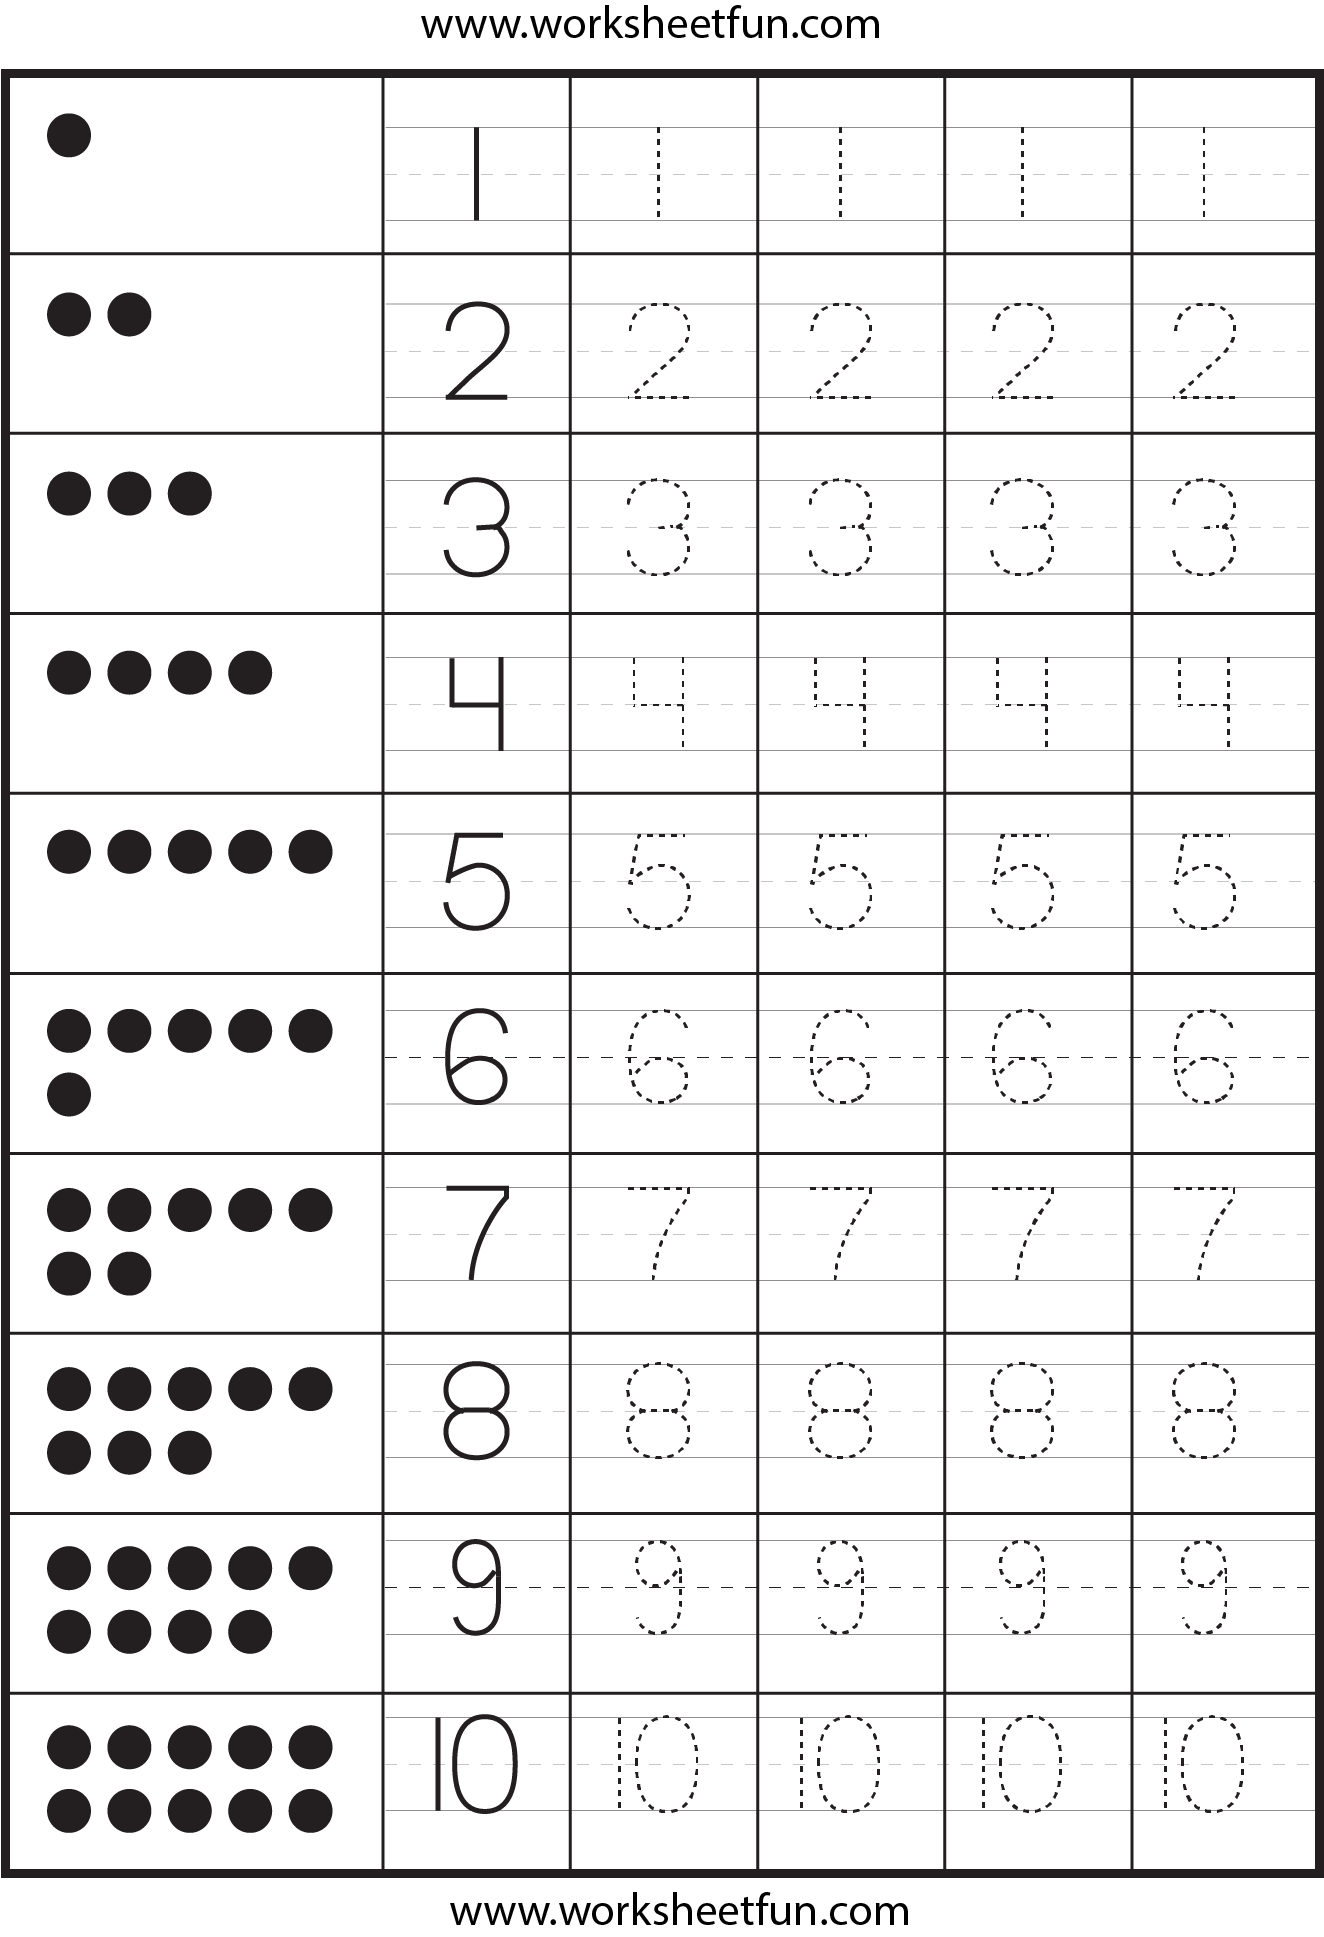 preschool-number-worksheets-1-10-numbersworksheet